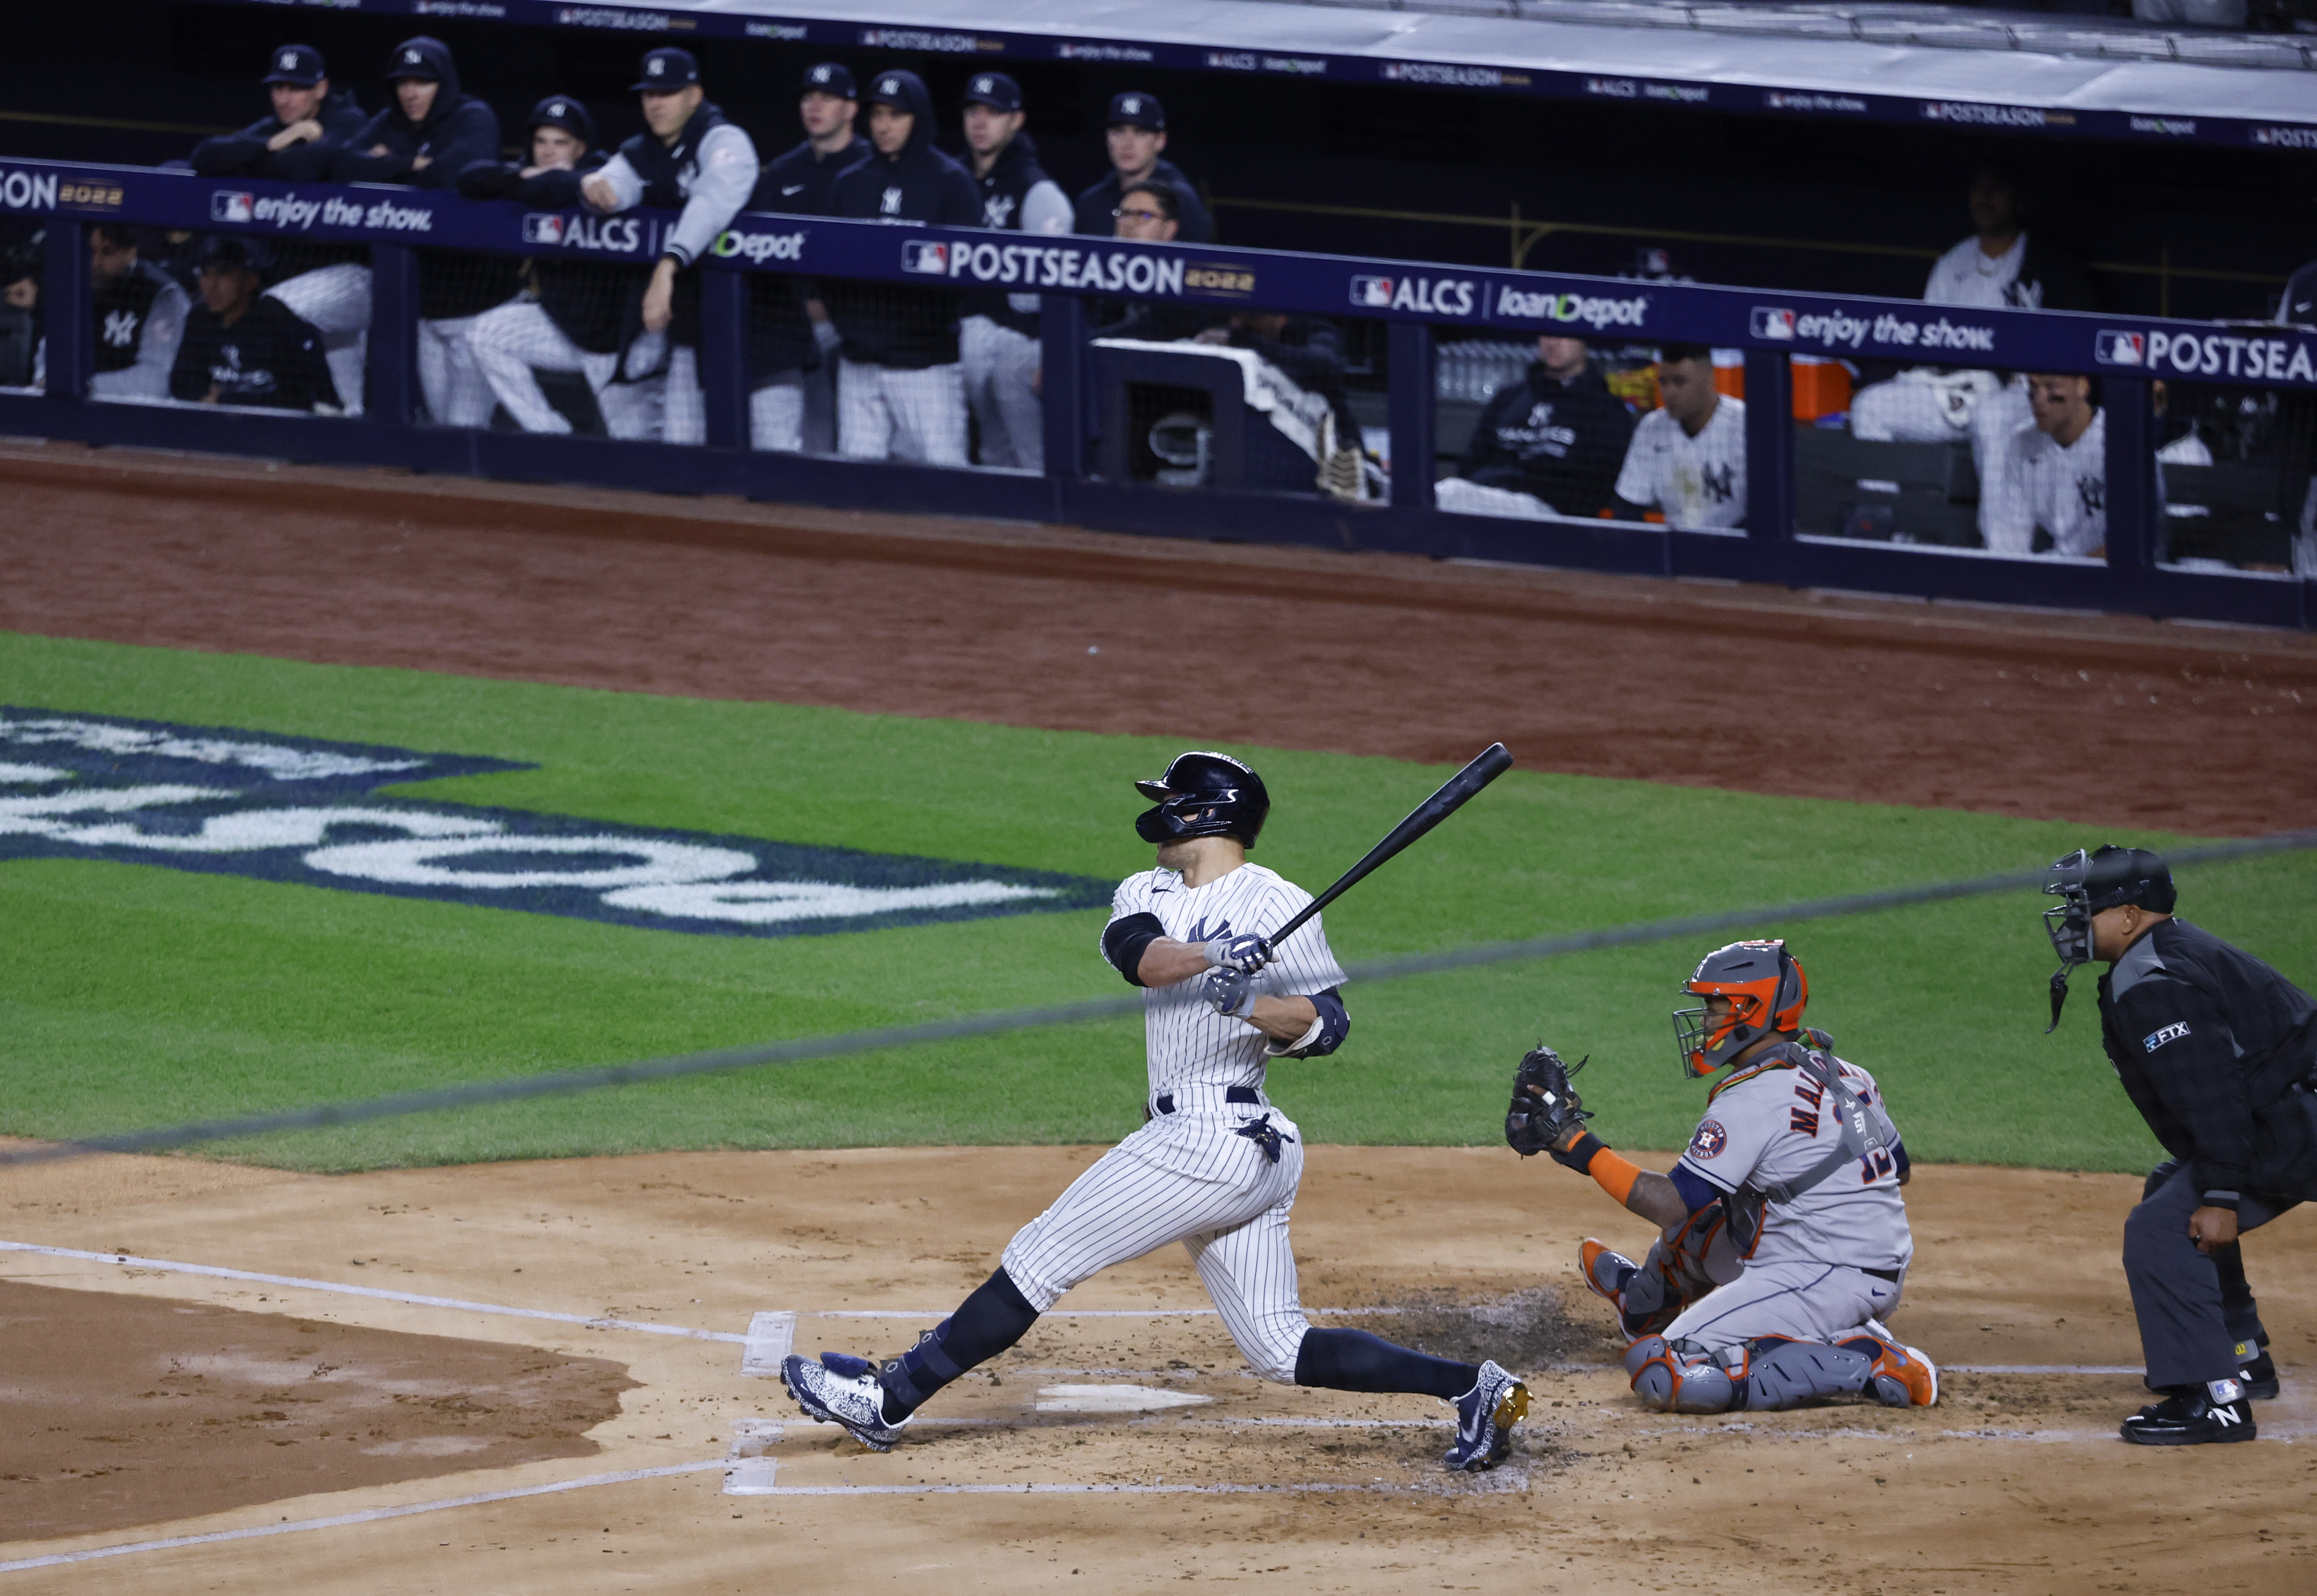 Yankees on brink because Aaron Judge is vanishing